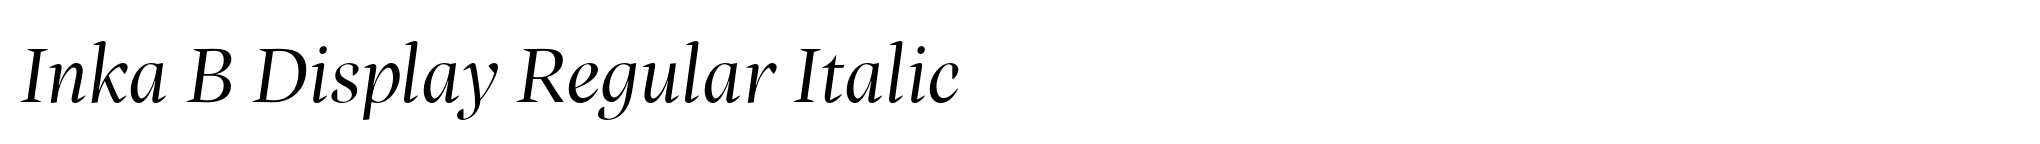 Inka B Display Regular Italic image